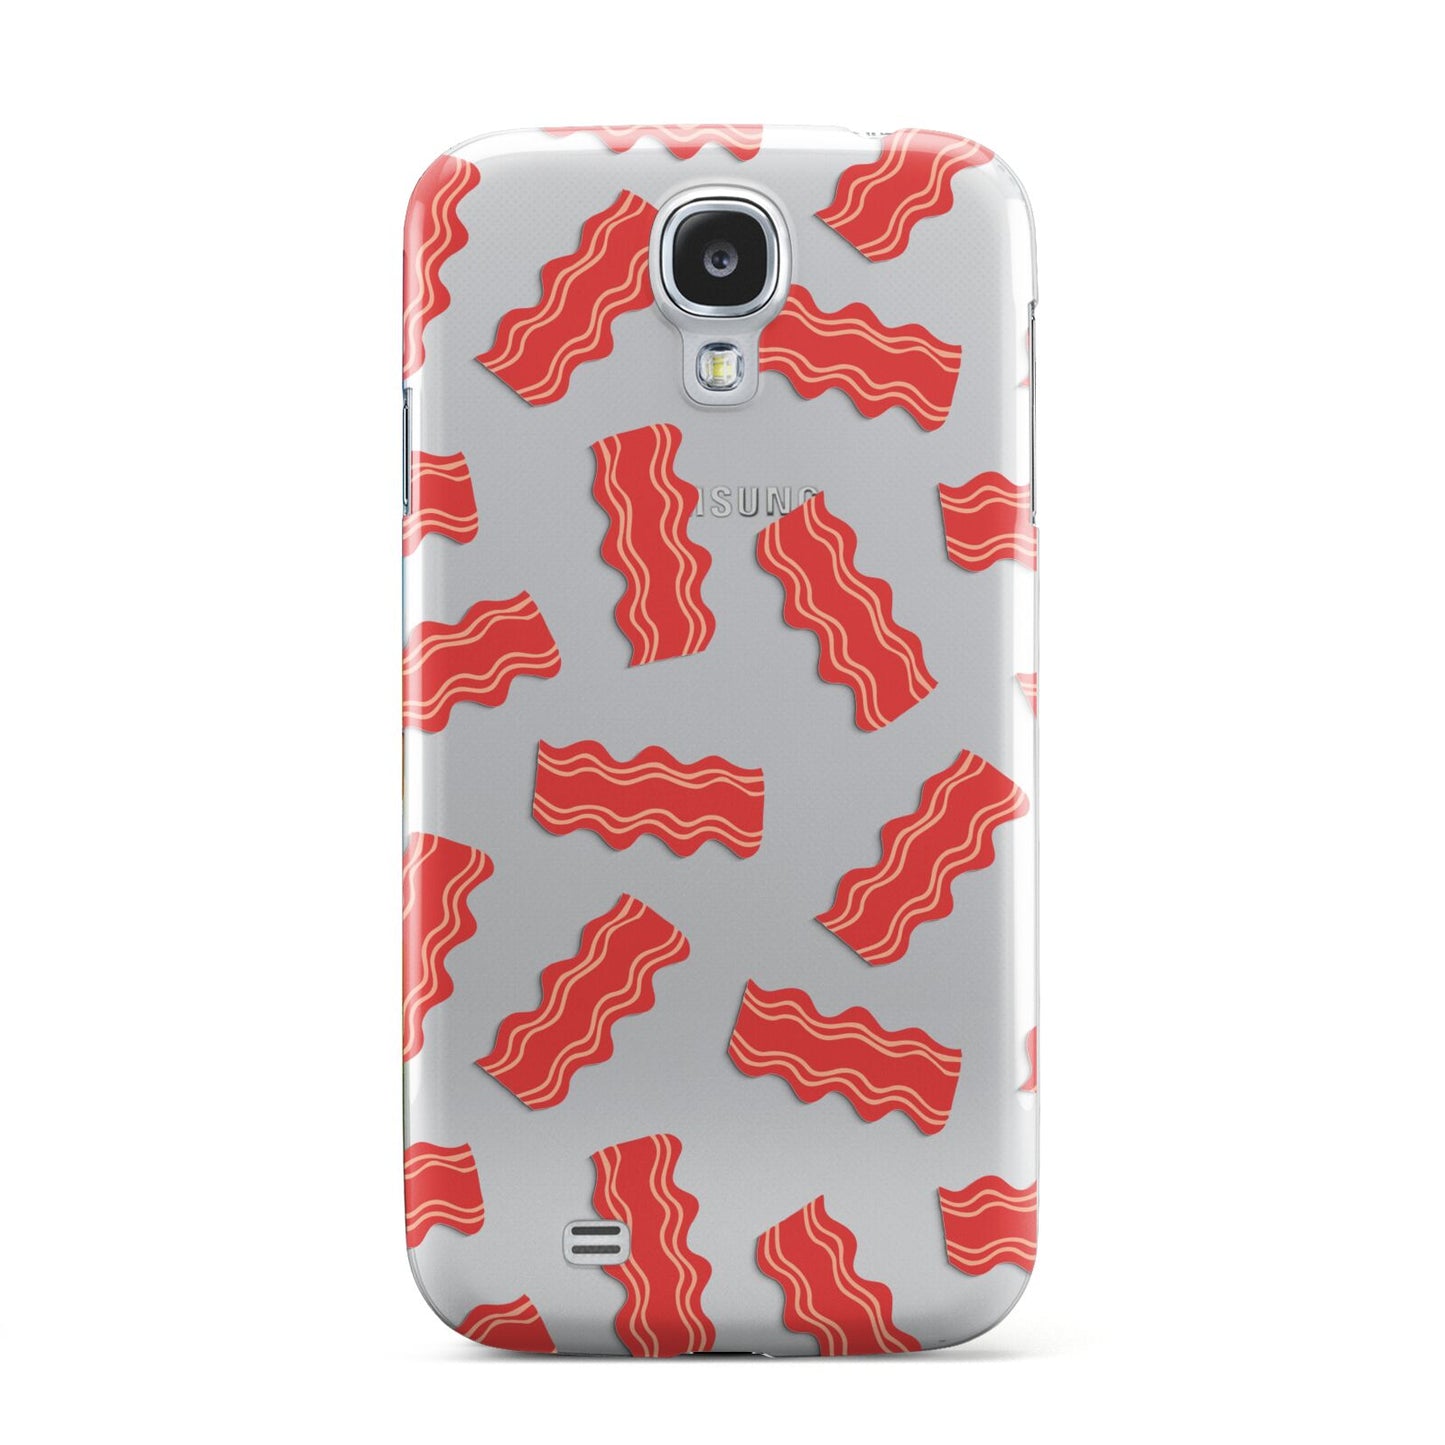 Bacon Samsung Galaxy S4 Case